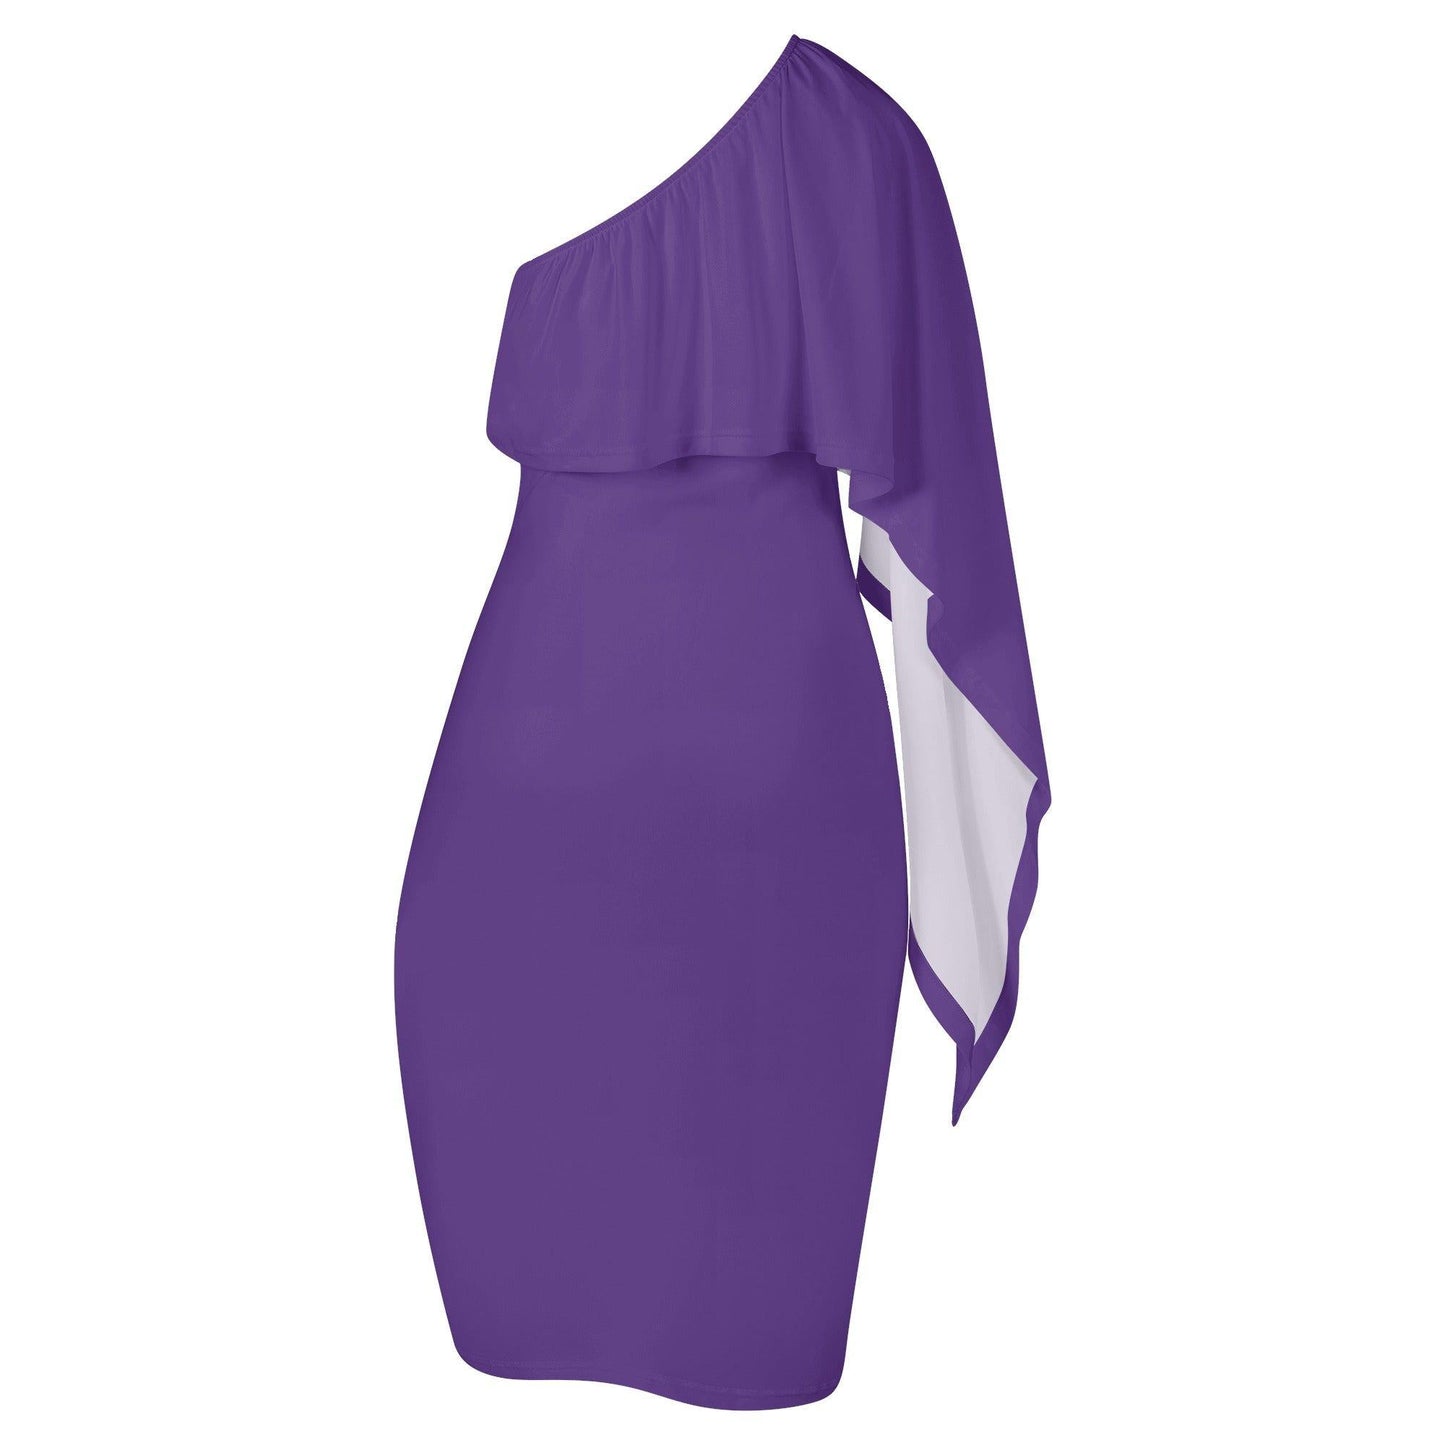 Lila Long Sleeve One Shoulder Dress -- Lila Long Sleeve One Shoulder Dress - undefined Long Sleeve One Shoulder Dress | JLR Design